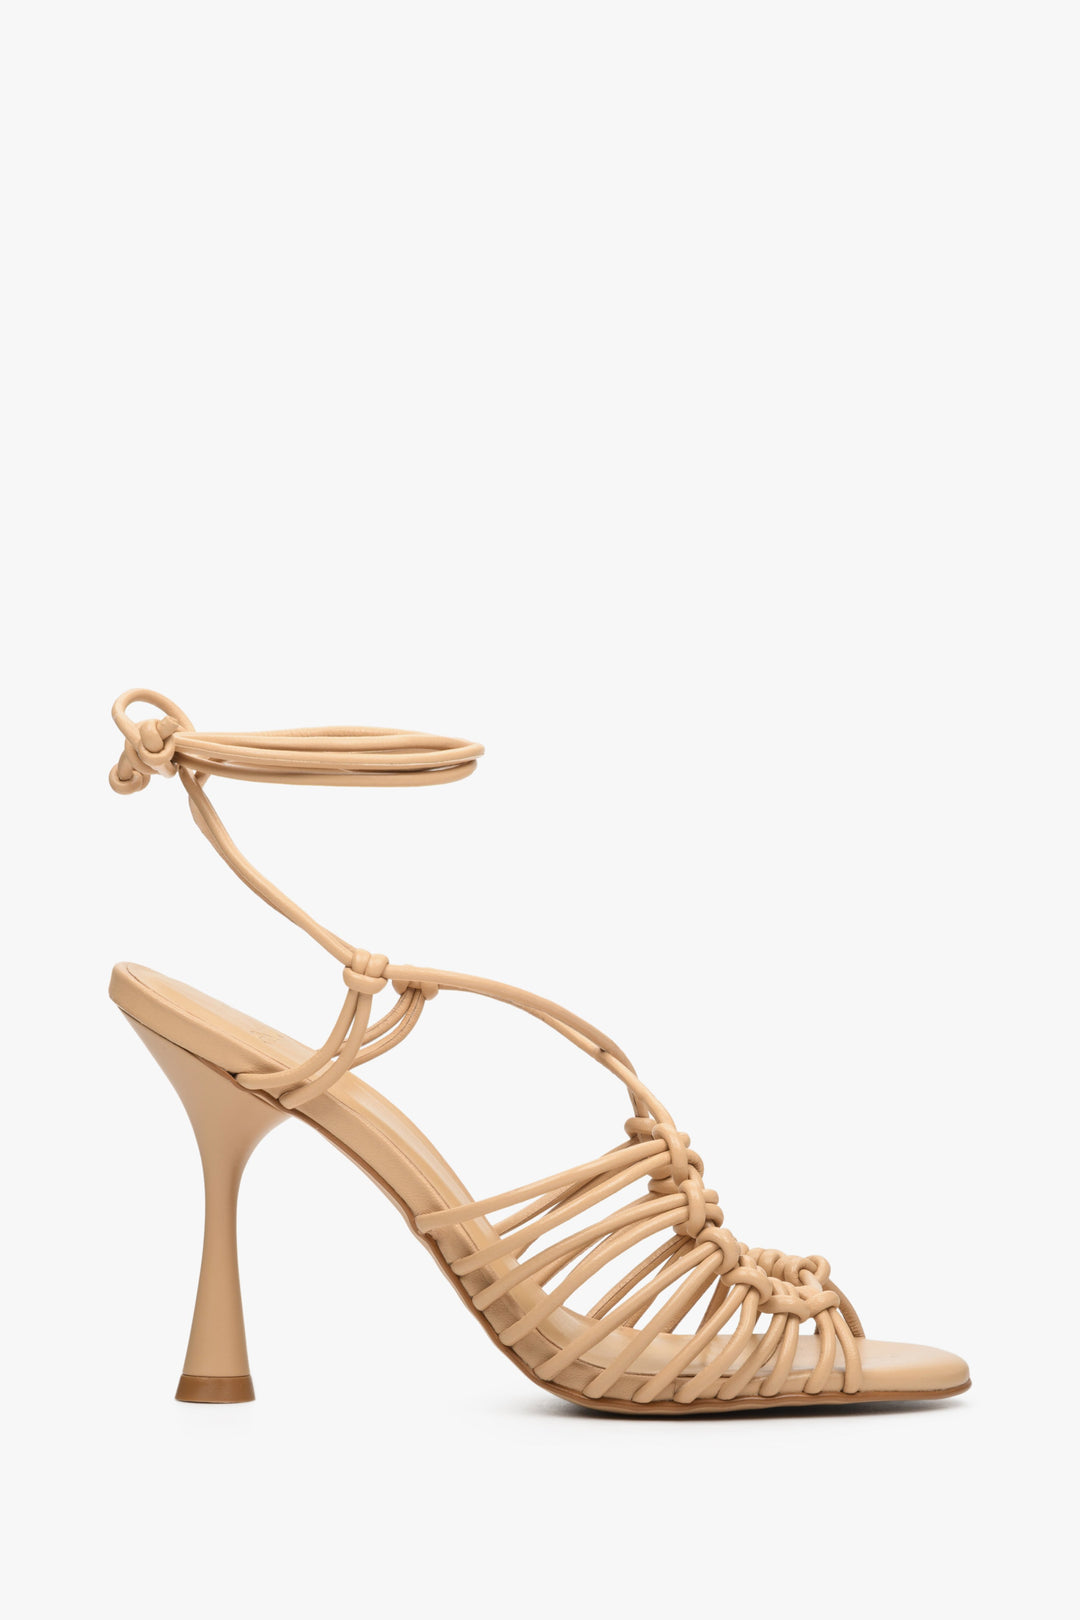 Women's beige leather lace-up sandals by Estro - shoe profile.